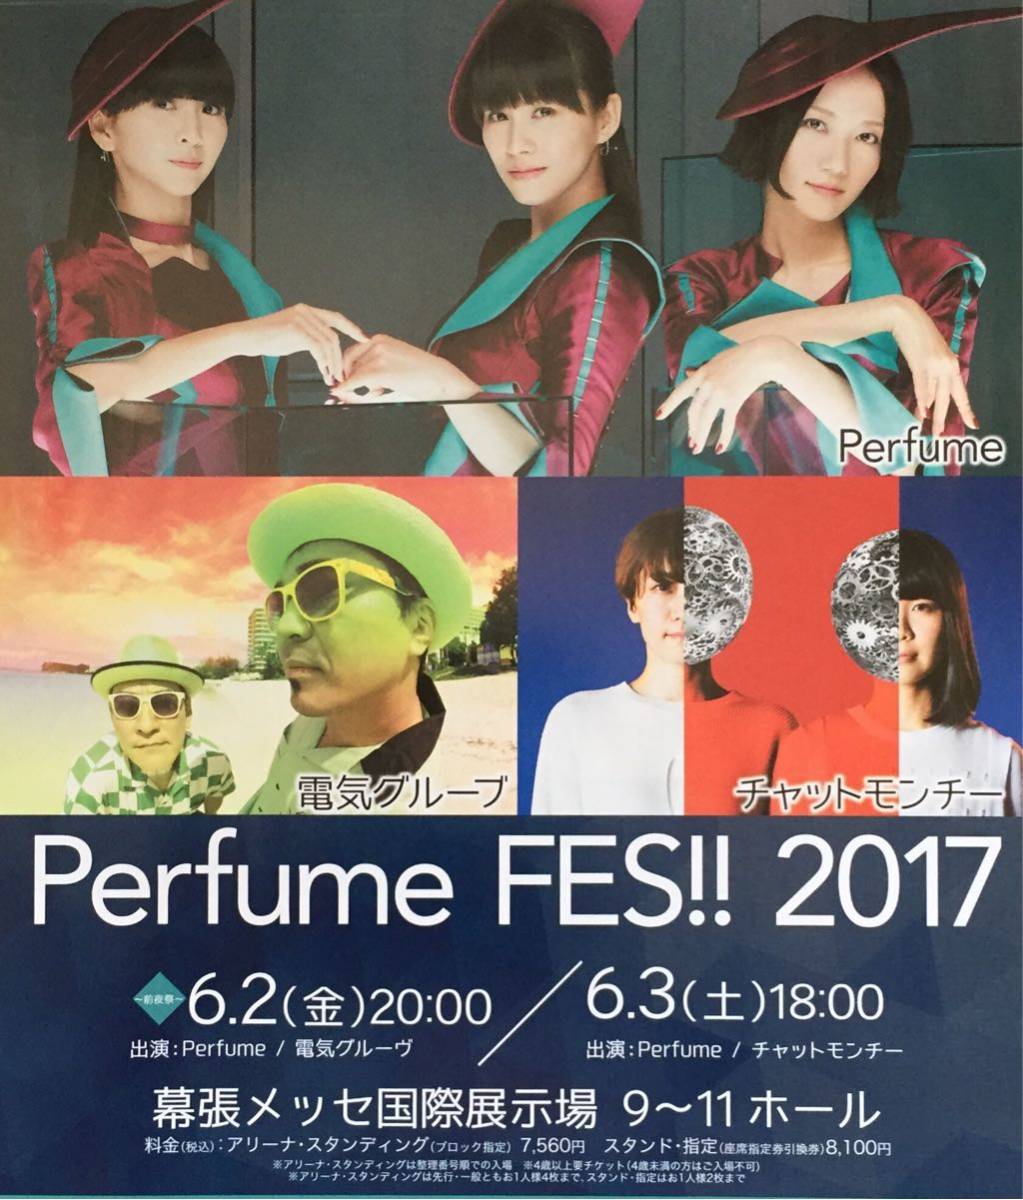 Perfume FES 2017 рекламная листовка не продается 